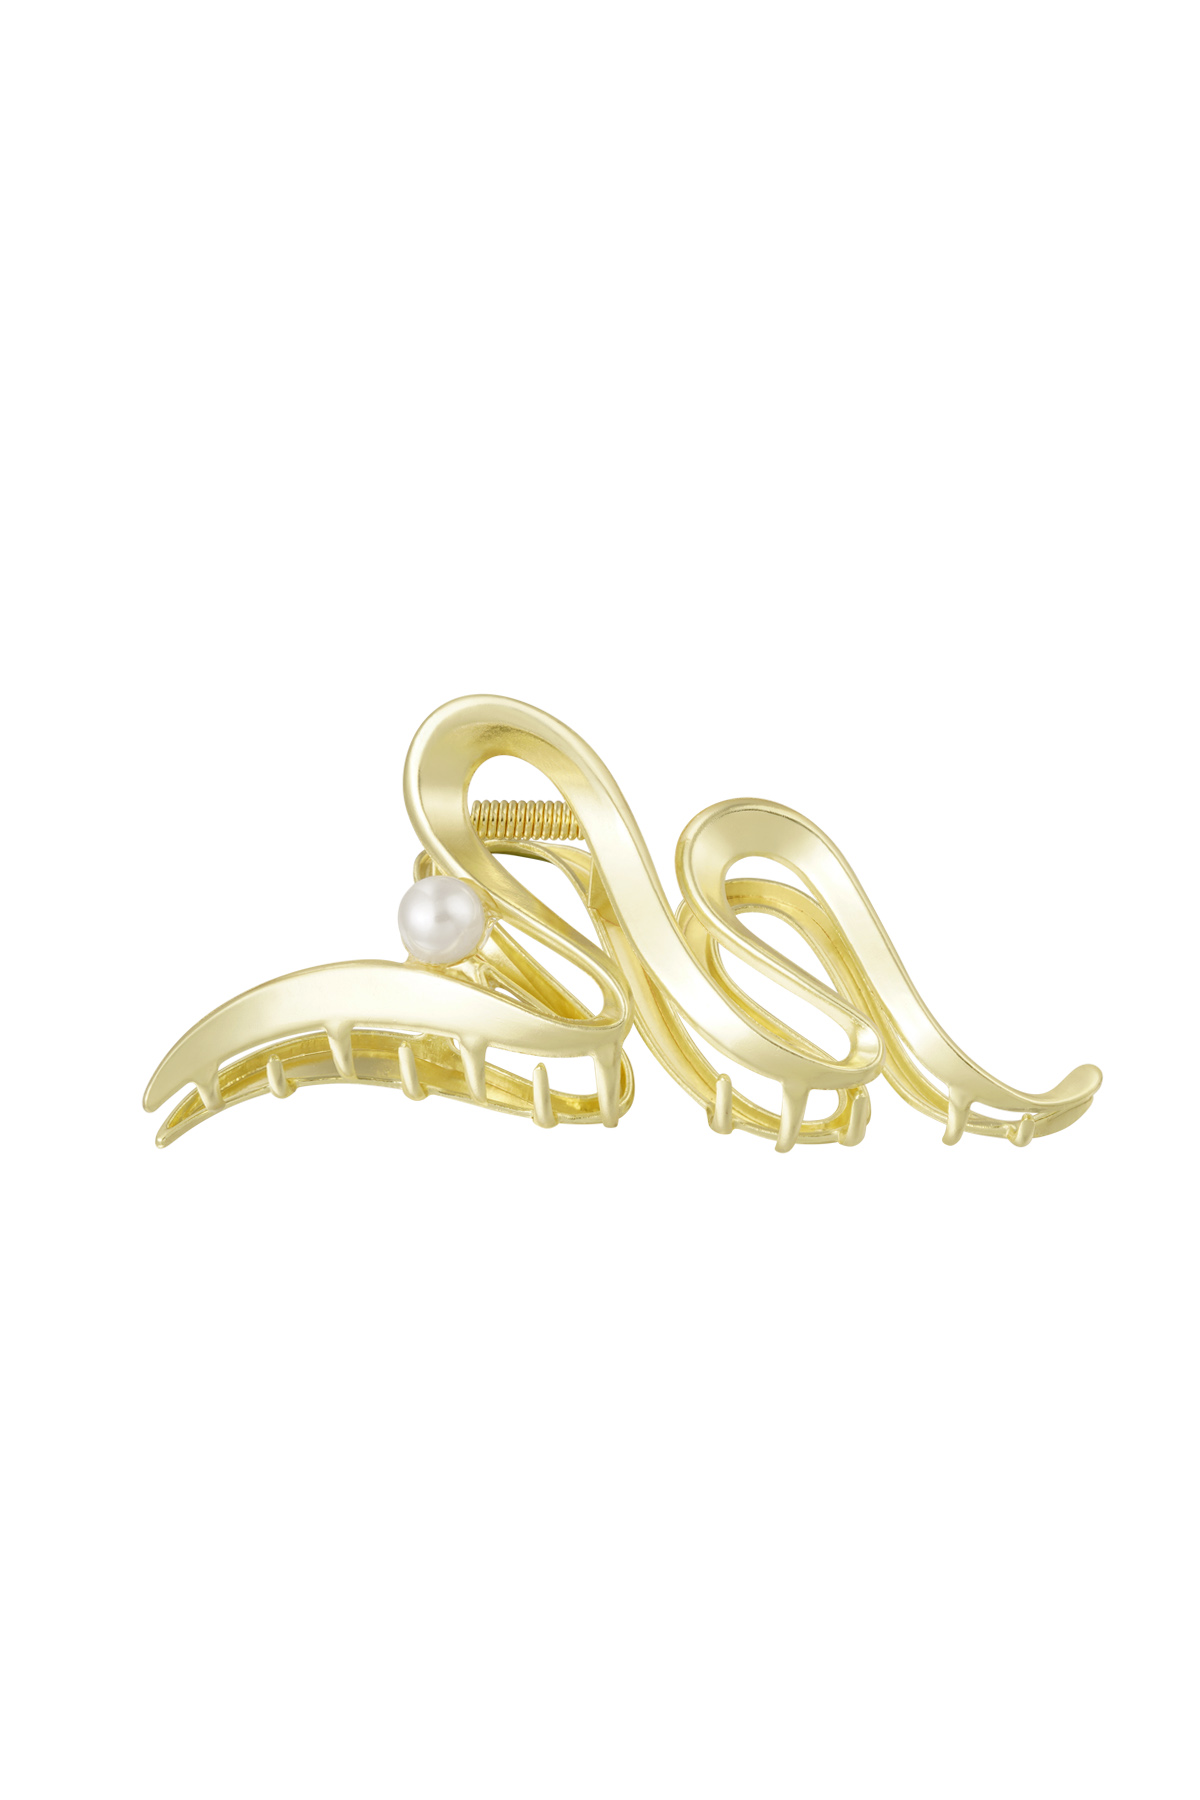 Haarspange Locke mit Perle - goldfarbenes Metall 